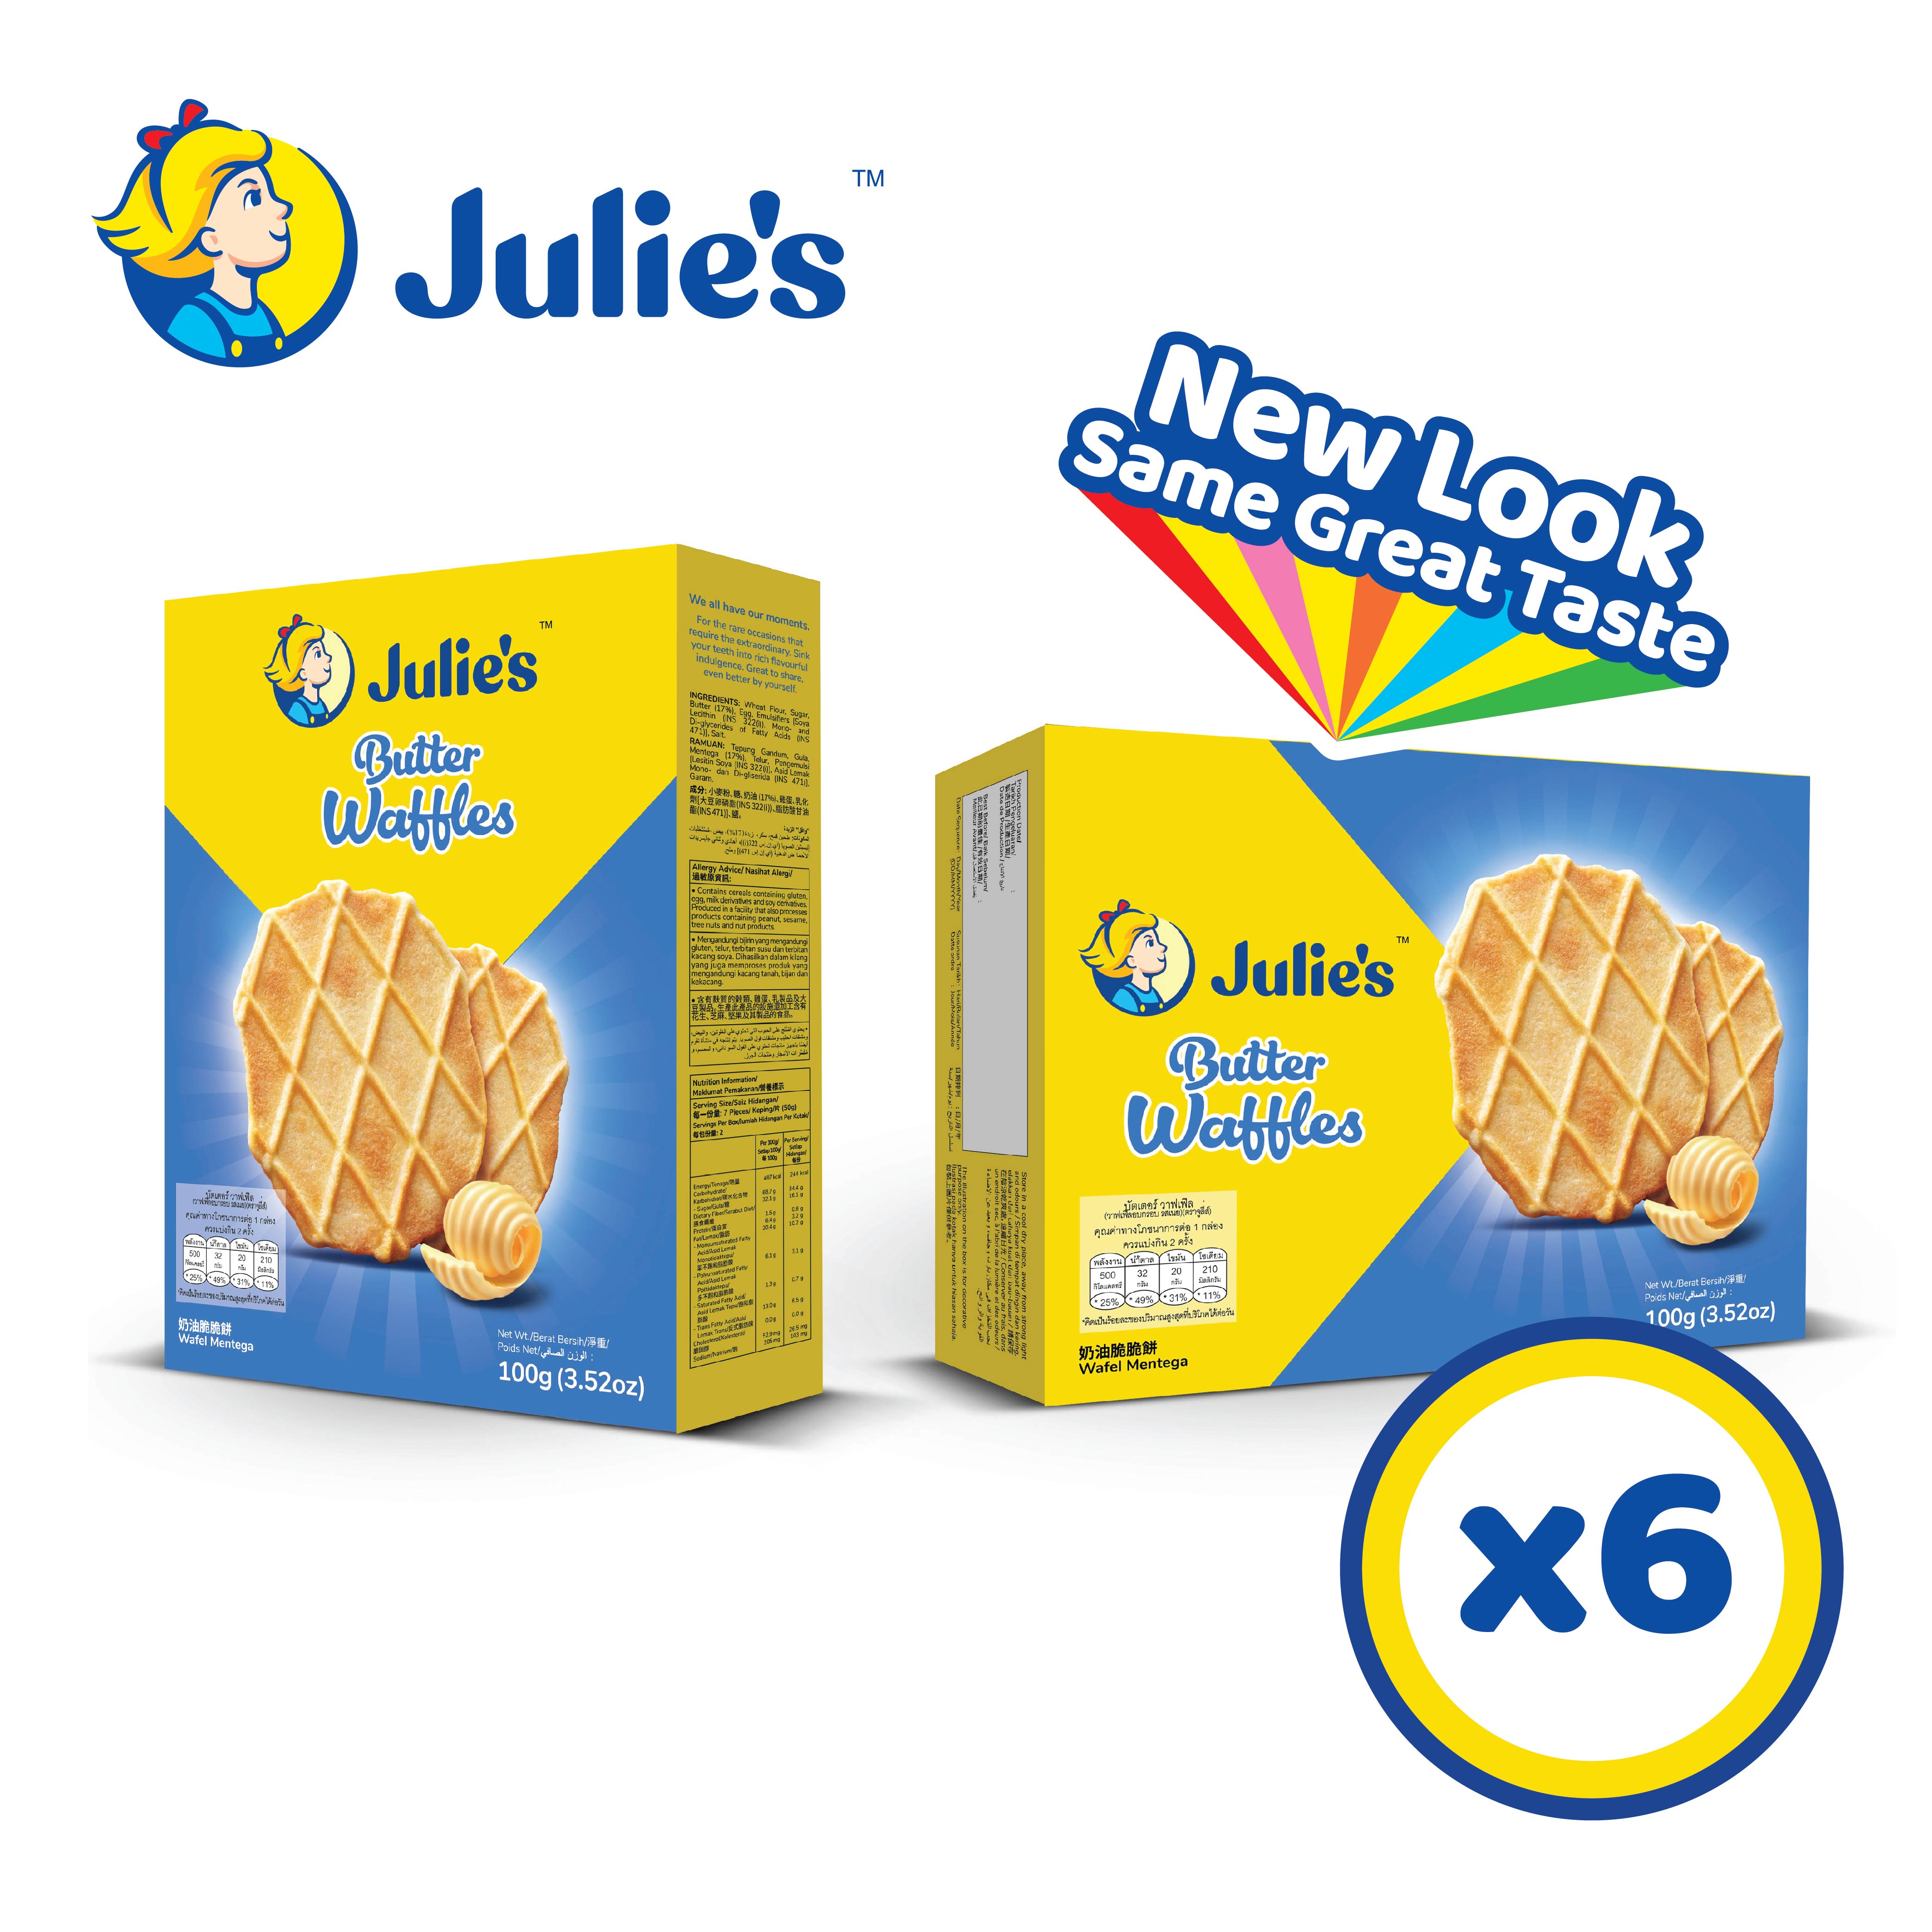 Julie's Butter Waffles 100g x 6 pack